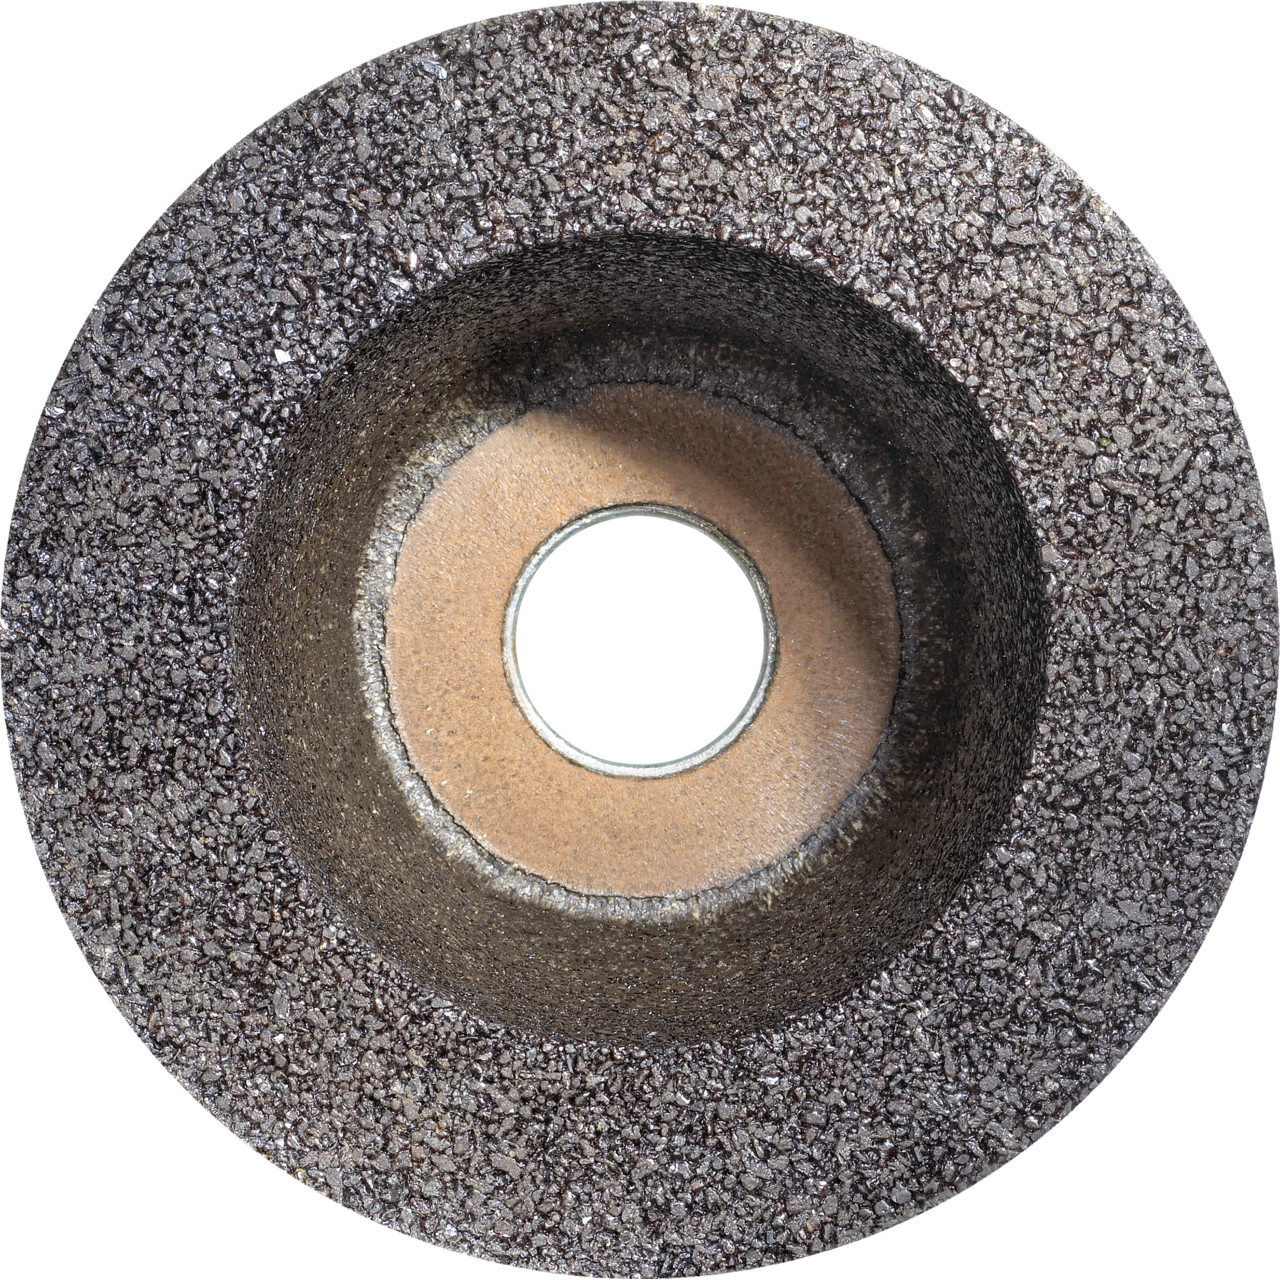 TYROLIT Pot en résine synthétique D/JxPxH 110/90x55x22,23 Pour la pierre, forme : 11BT Pot à meuler, art. 317307